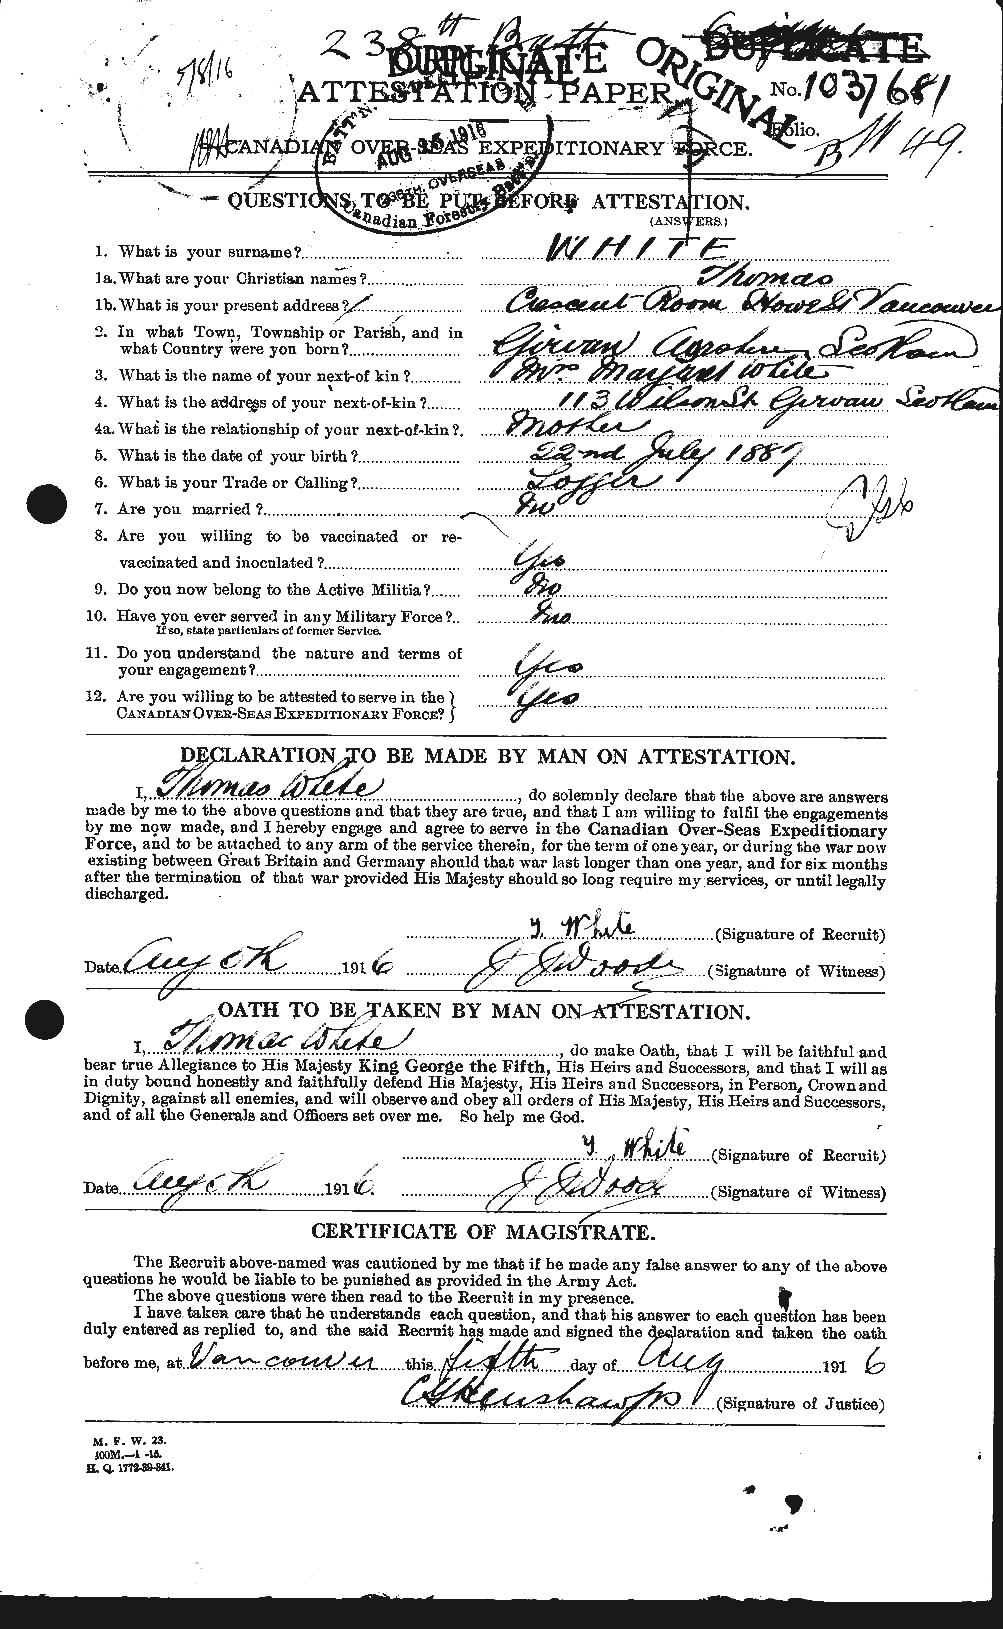 Dossiers du Personnel de la Première Guerre mondiale - CEC 673581a